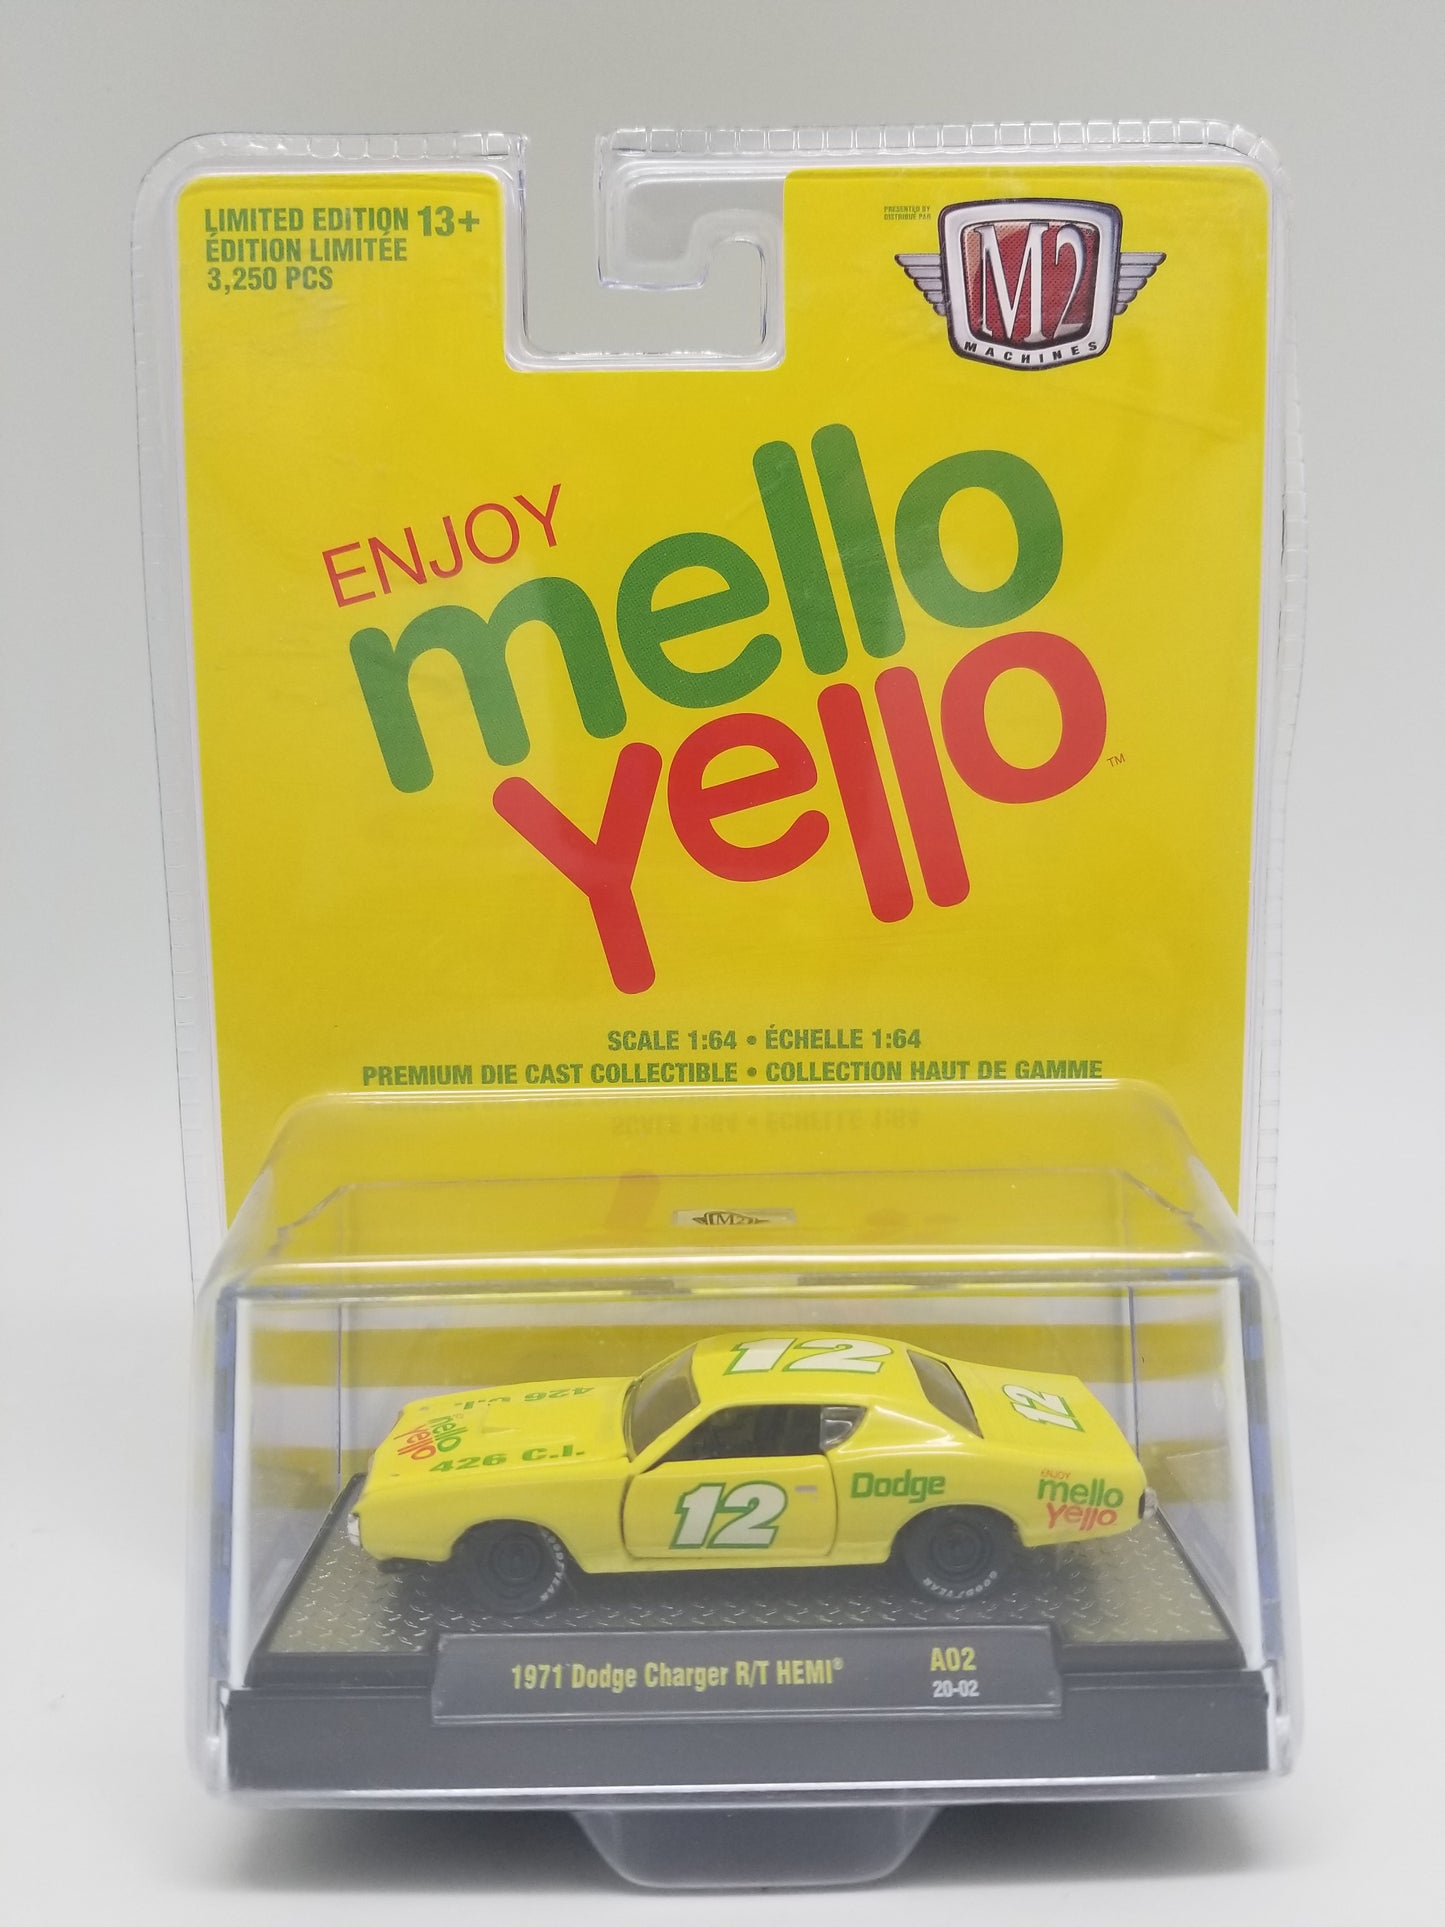 M2 1971 Dodge Charger R/T HEMI - Mello Yello